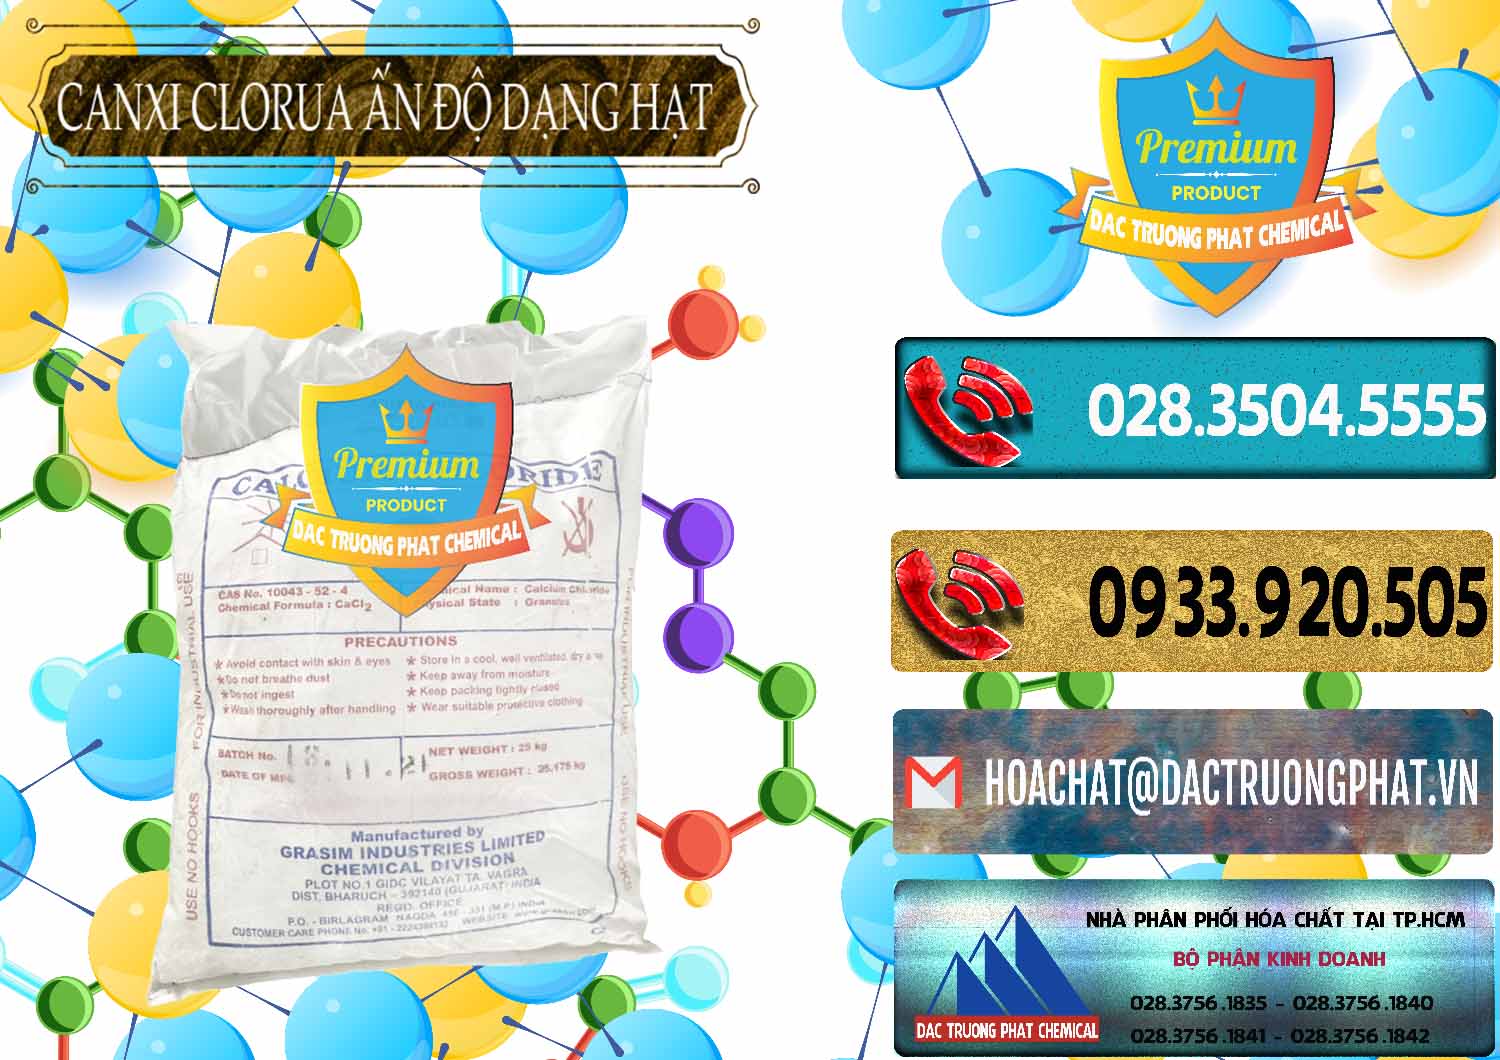 Nhà nhập khẩu & bán CaCl2 – Canxi Clorua Dạng Hạt Aditya Birla Grasim Ấn Độ India - 0418 - Chuyên phân phối _ cung cấp hóa chất tại TP.HCM - hoachatdetnhuom.com